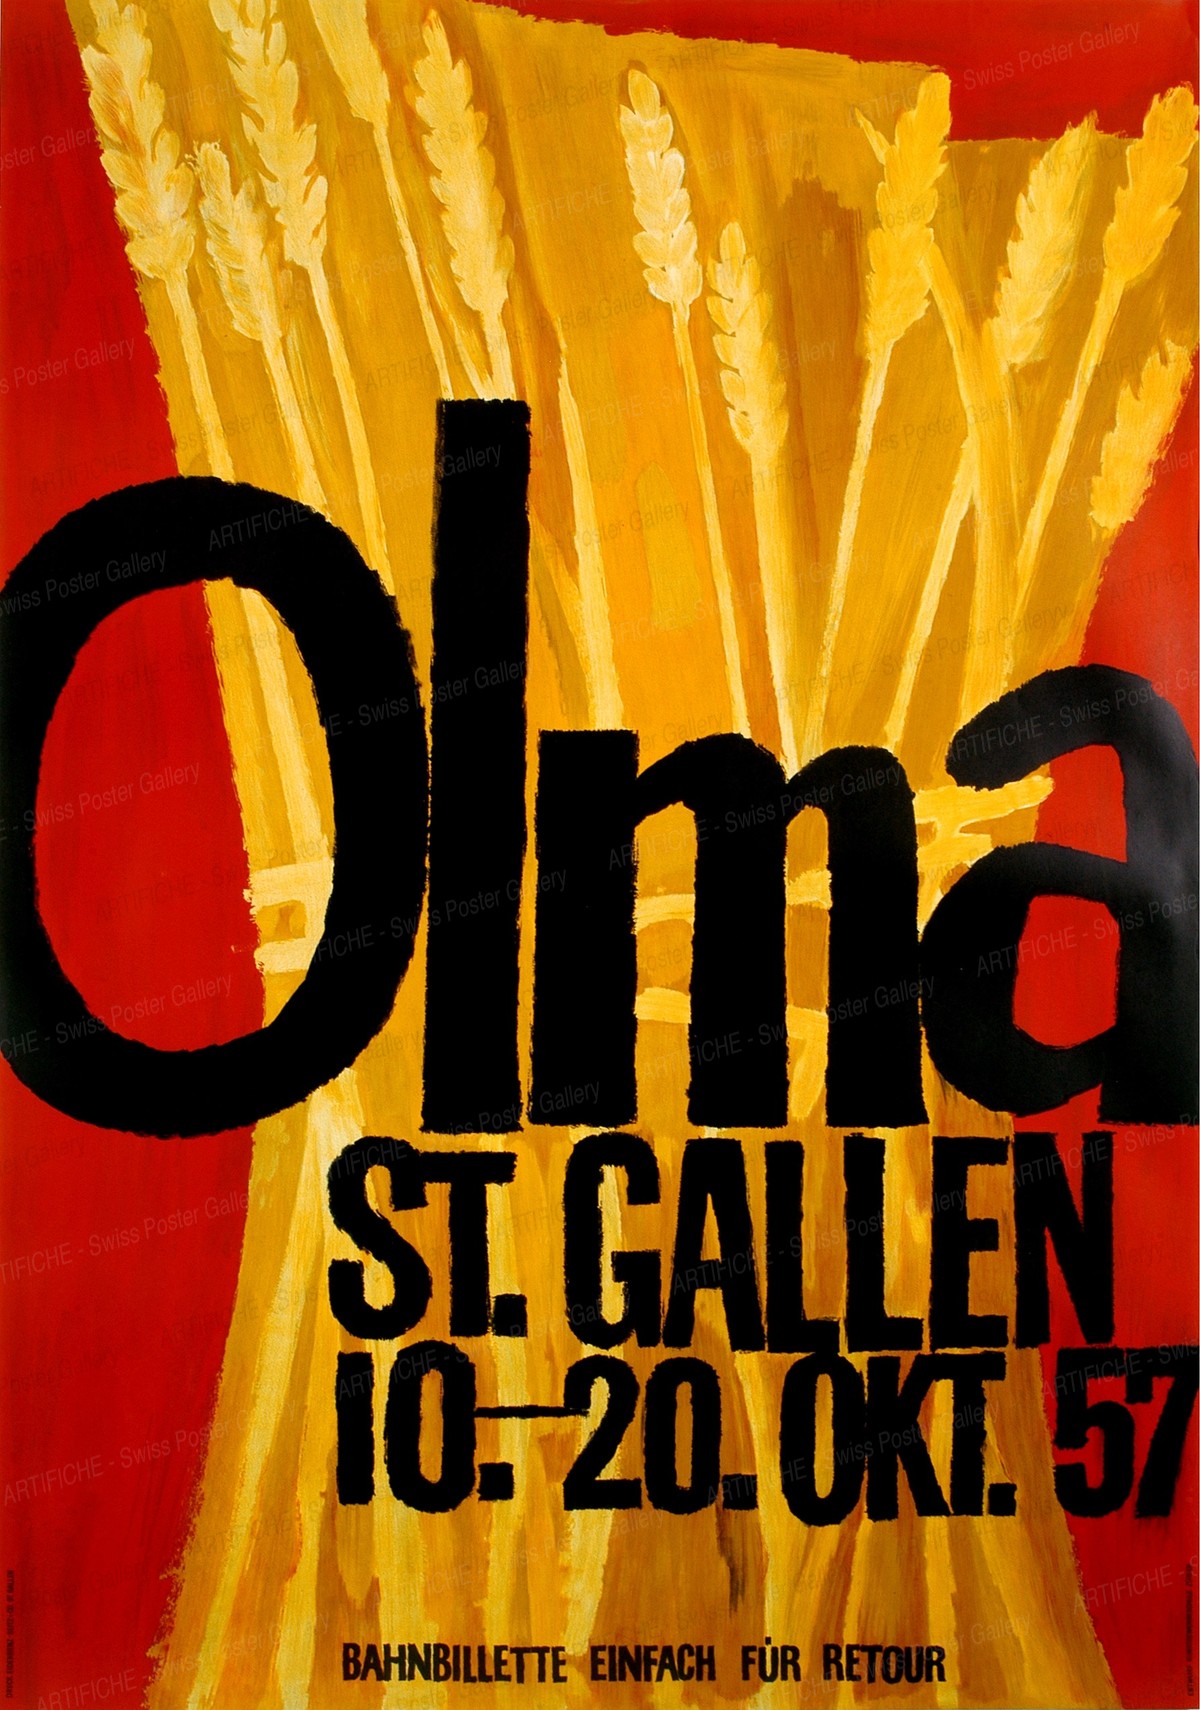 OLMA St. Gallen – 10. – 20. Okt. 57, Artist unknown